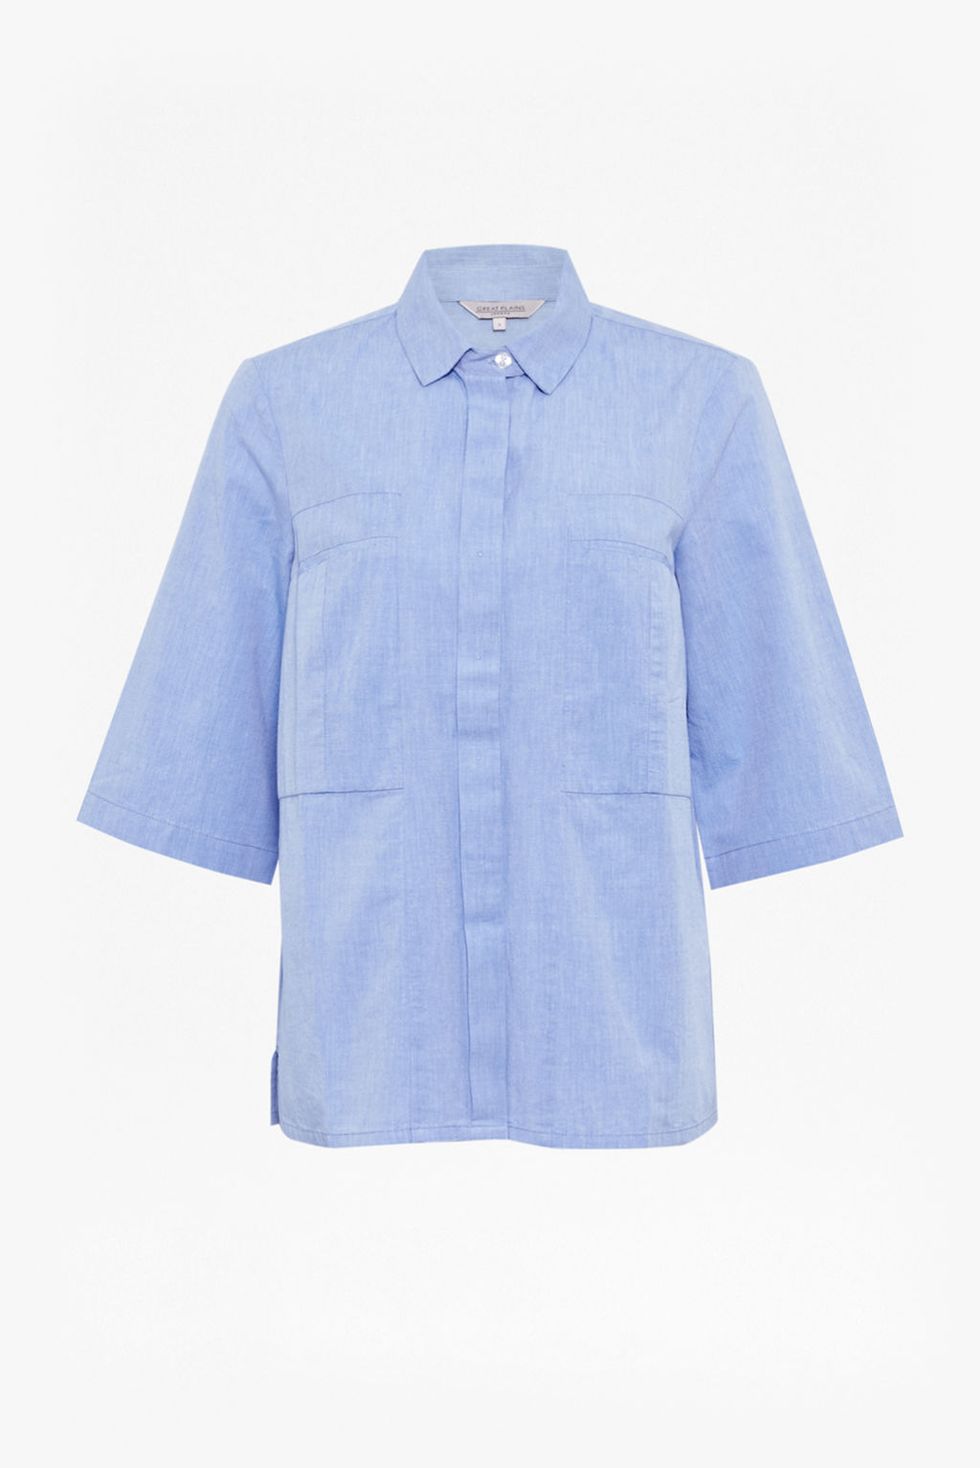 Great Plains blue shirt @ amazon.co.uk £45.00.jpg